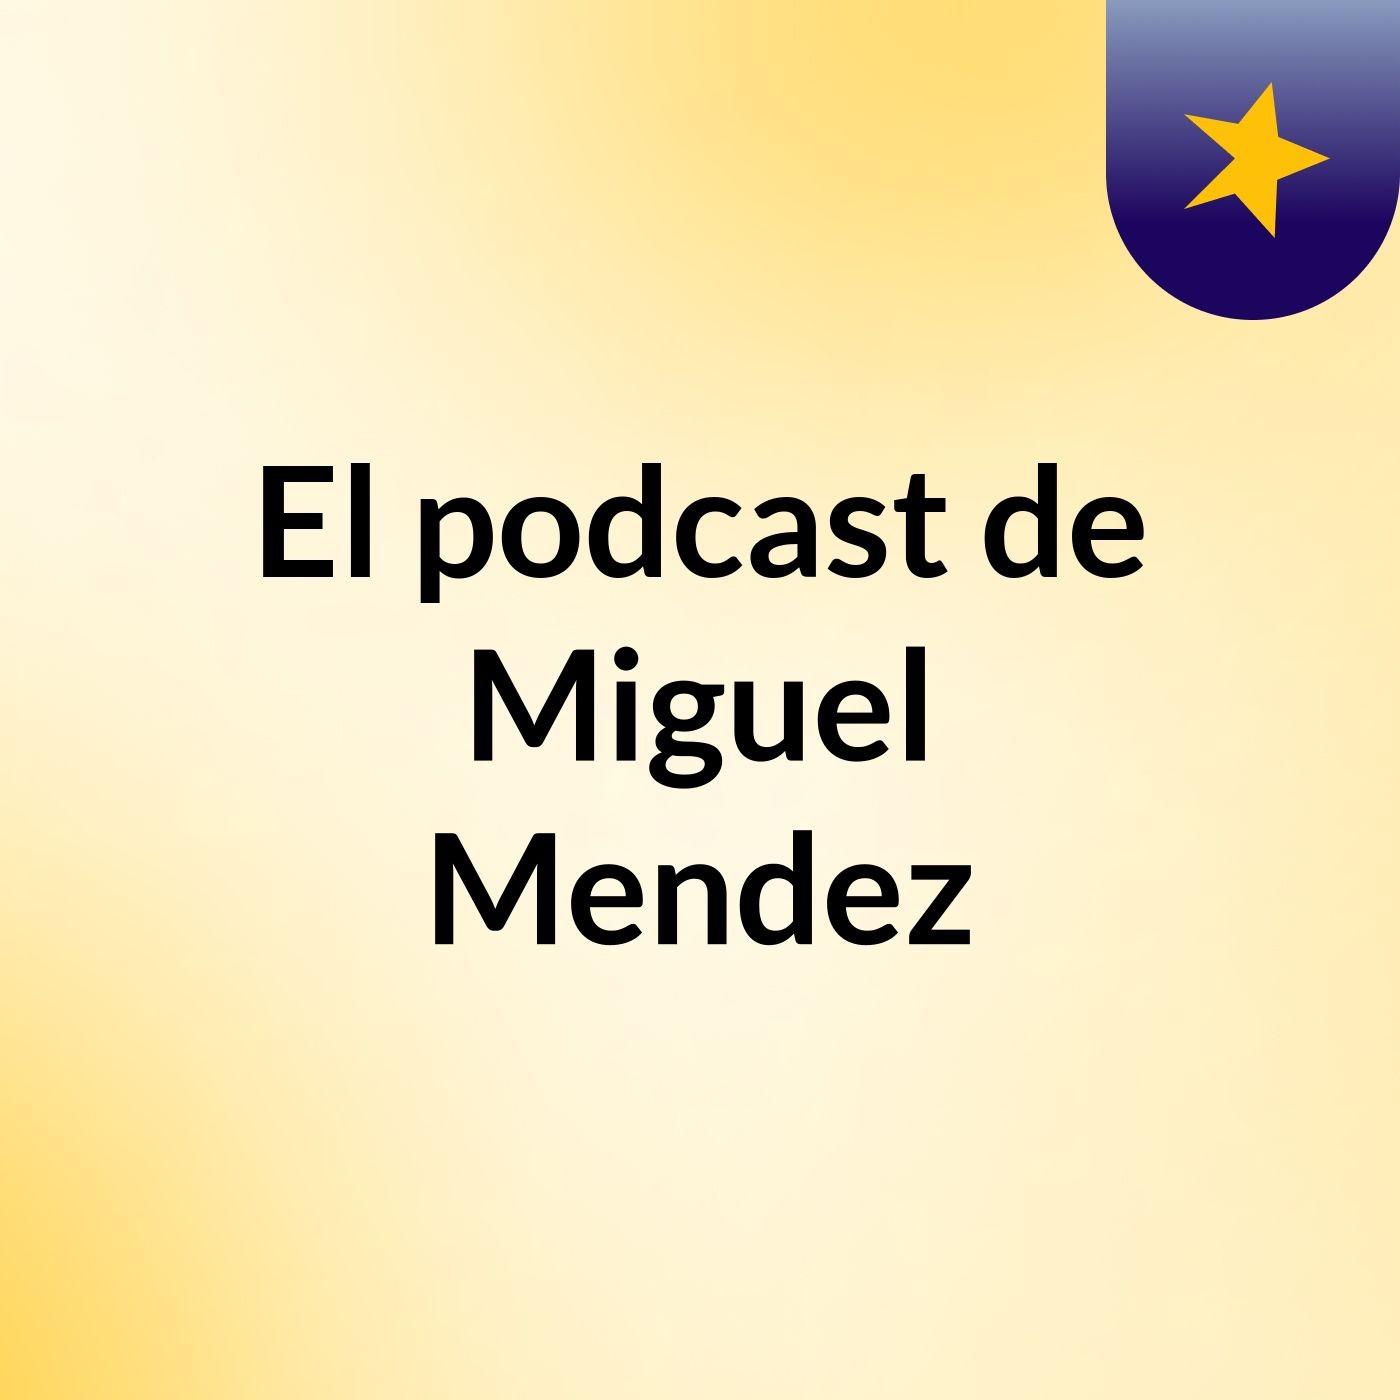 El podcast de Miguel Mendez